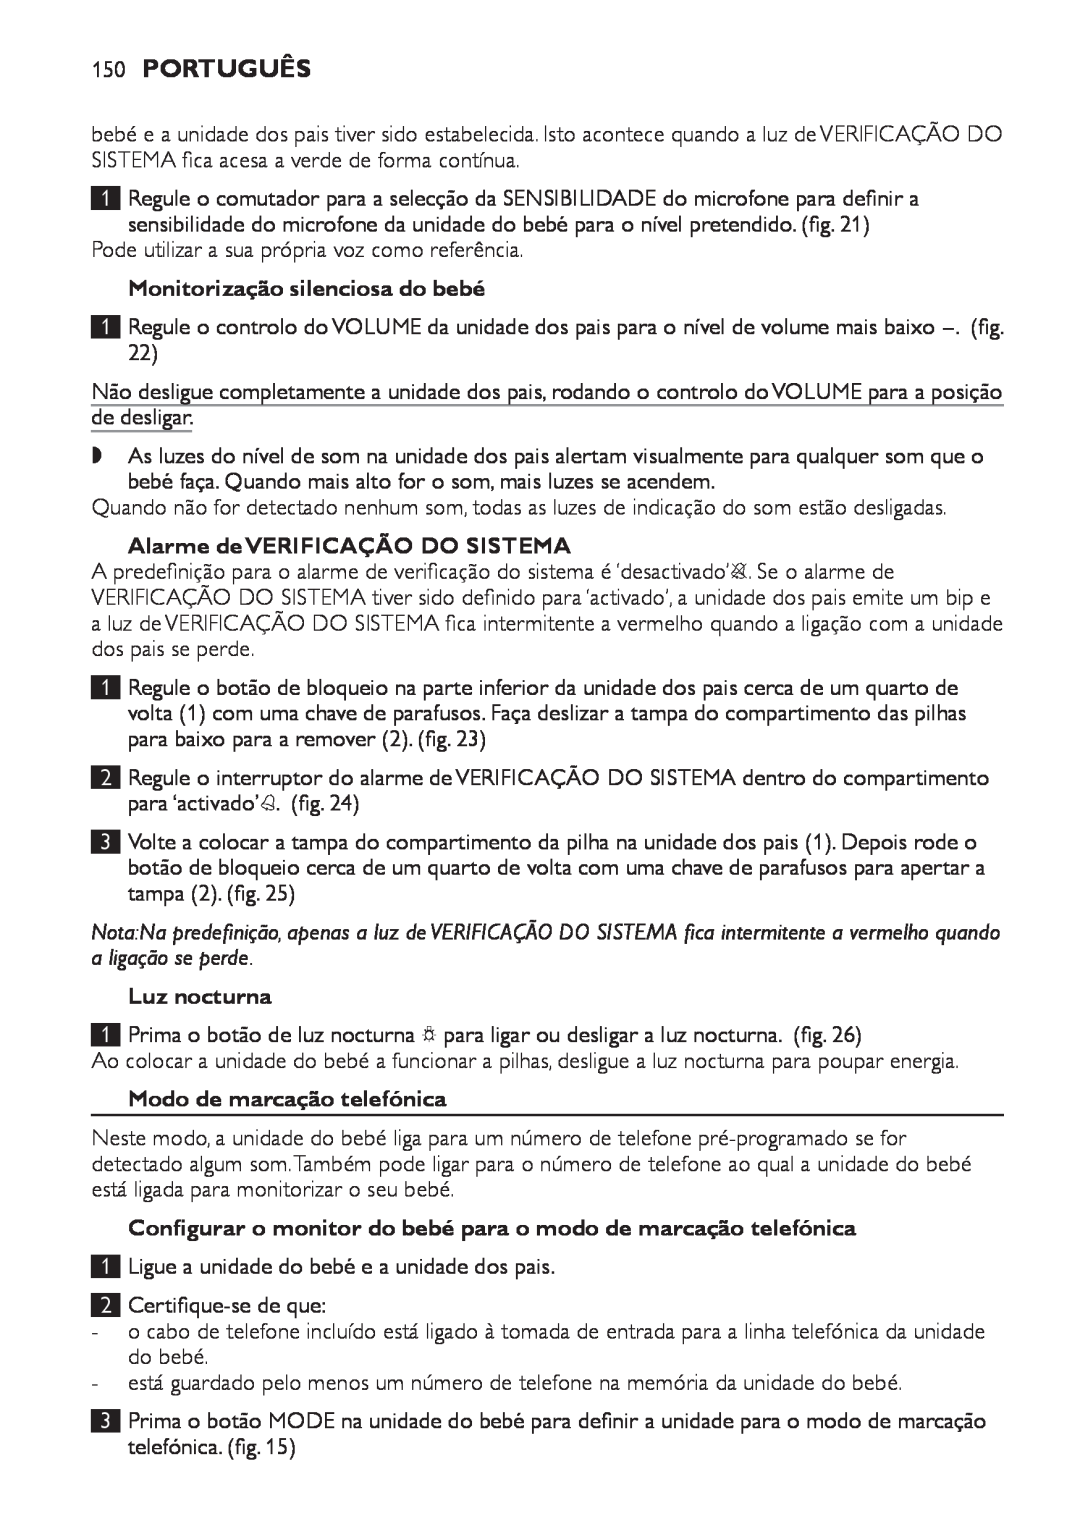 Philips SCD 469 150Português, Monitorização silenciosa do bebé, Alarme de VERIFICAÇÃO DO SISTEMA, 1 2 3, Luz nocturna 